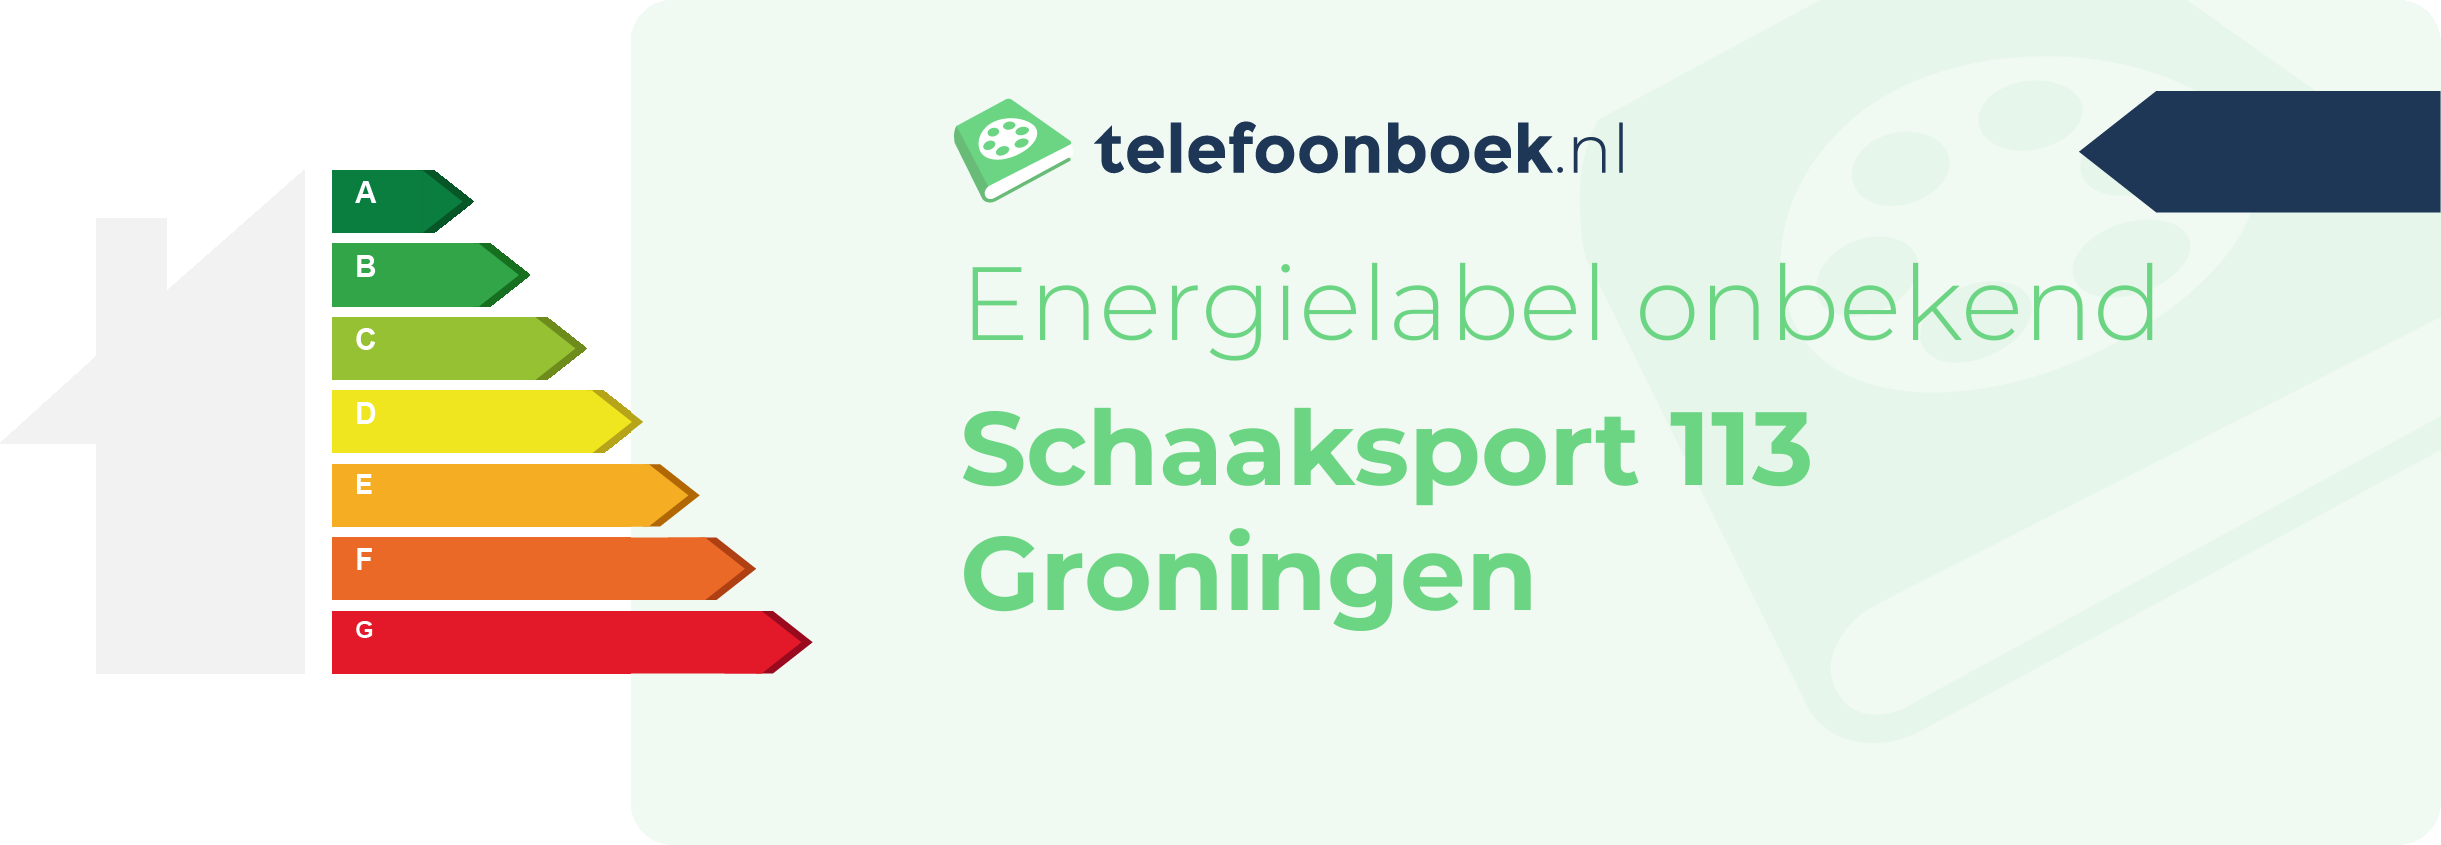 Energielabel Schaaksport 113 Groningen